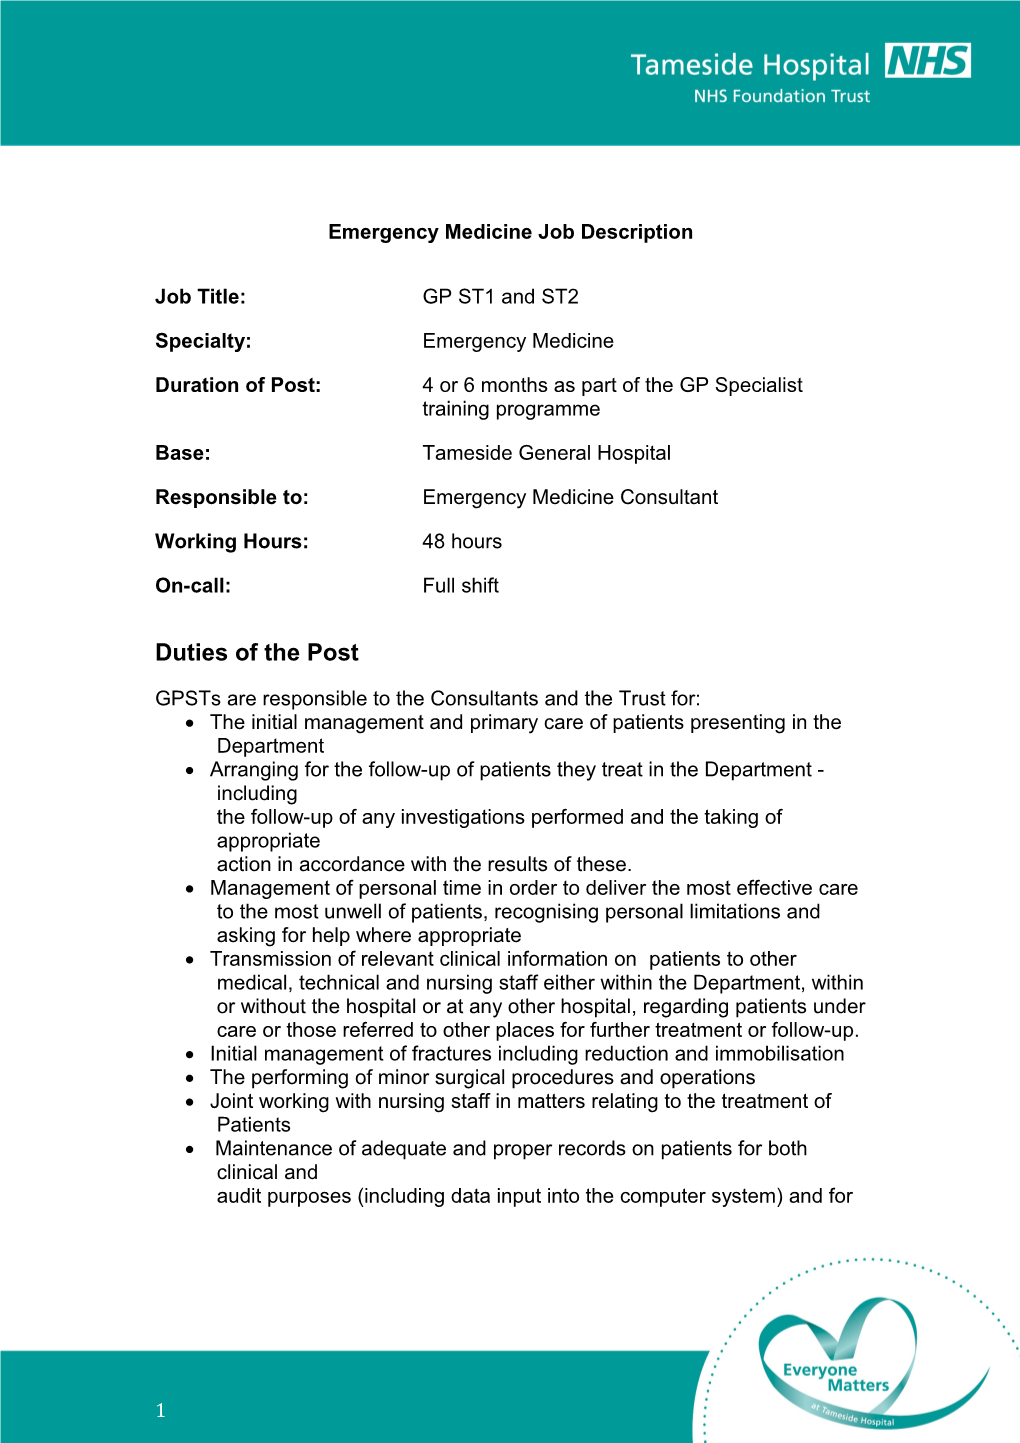 Emergency Medicine Job Description